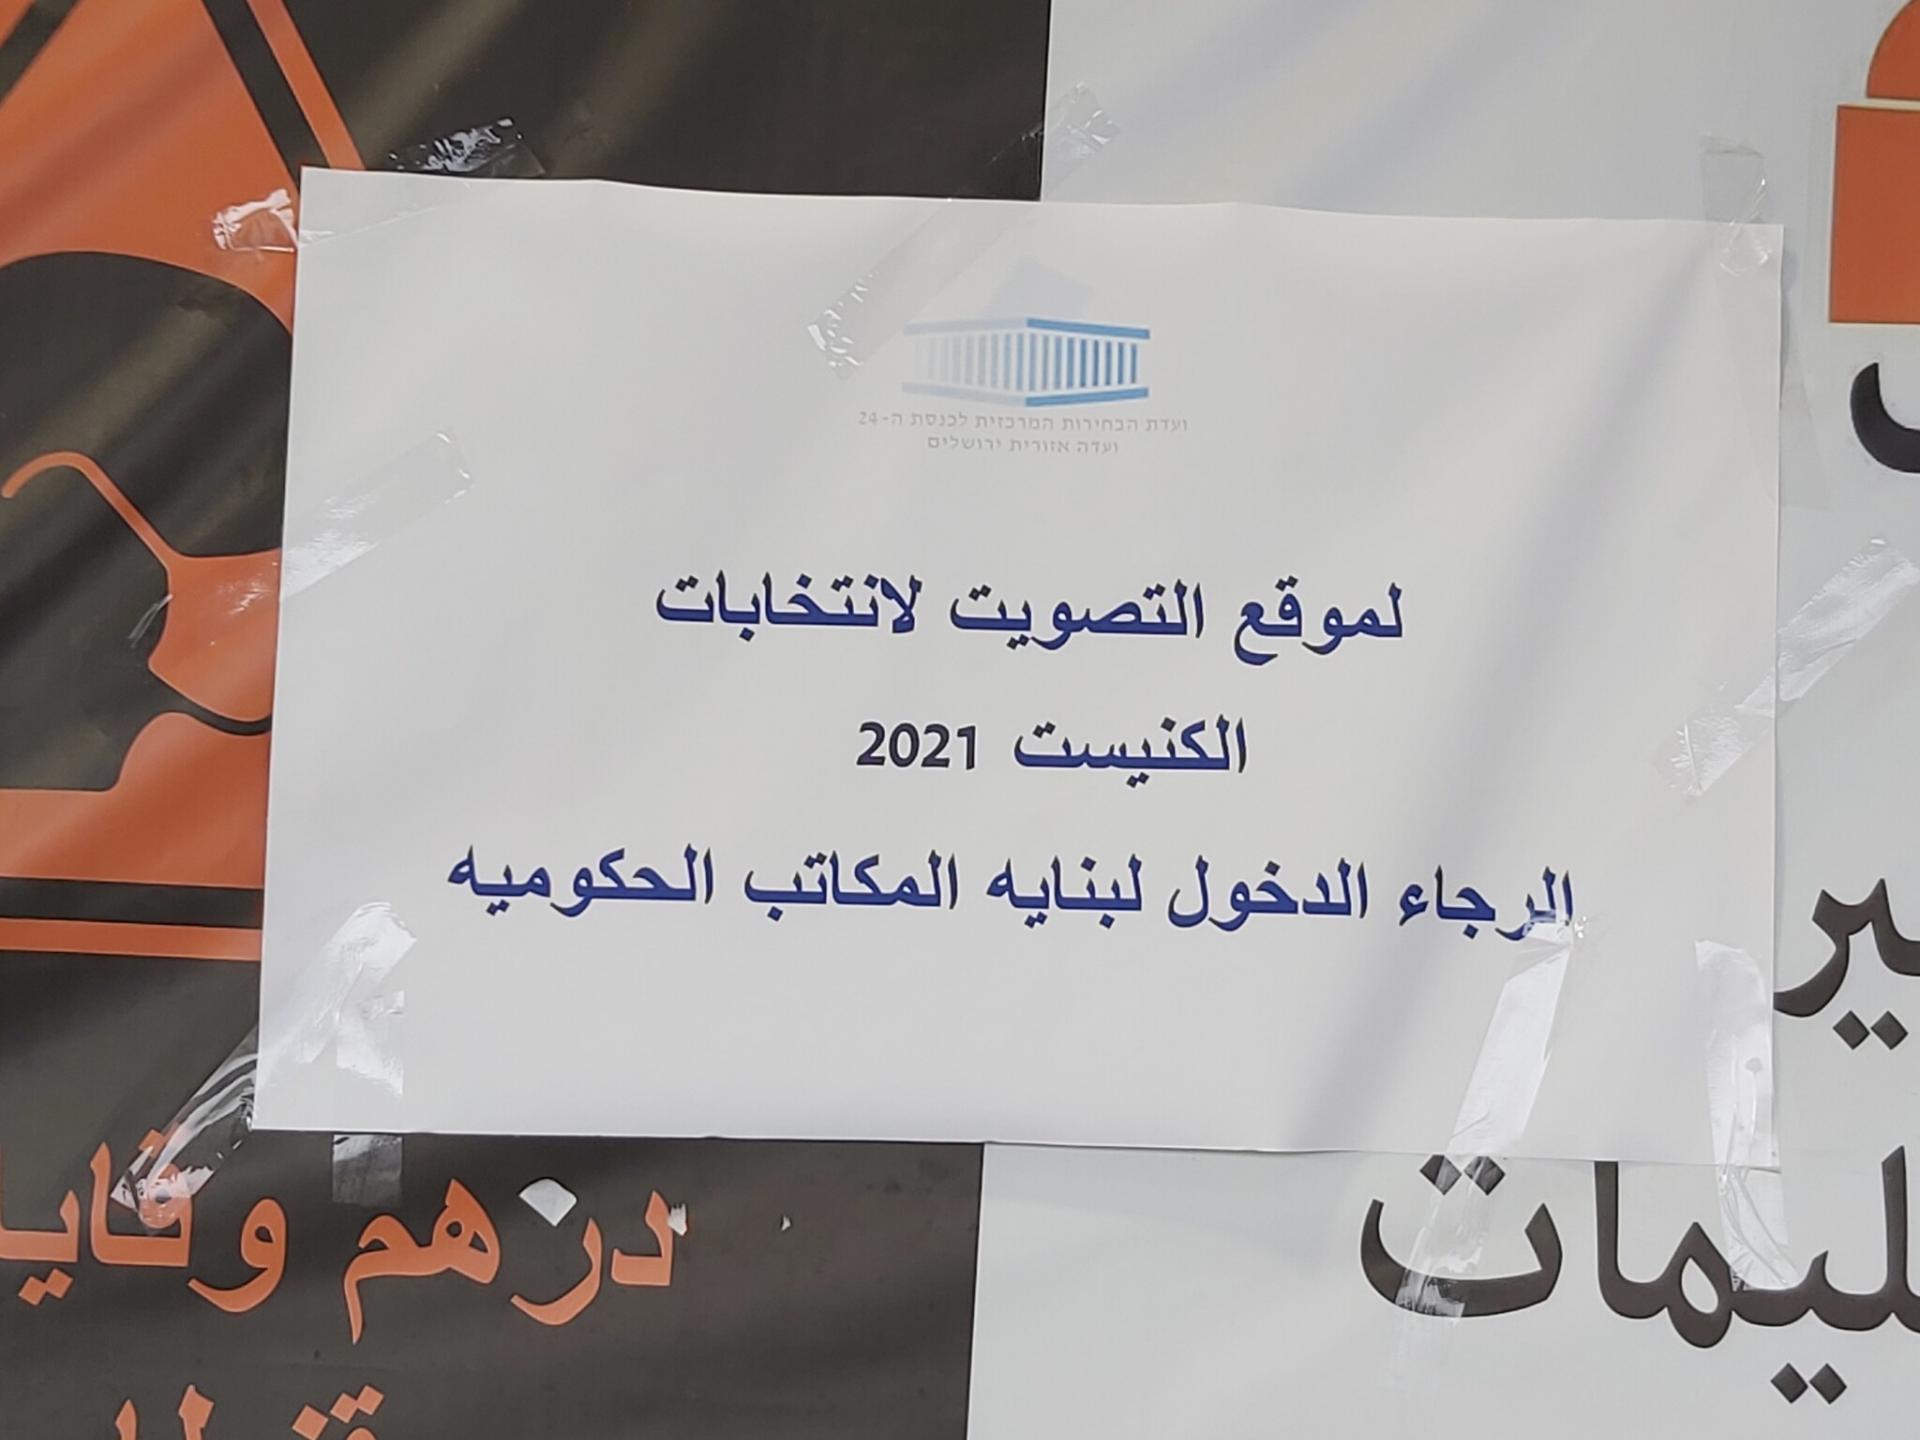 שלט נייר עליו כתוב: לאתר ההצבעה לבחירות/ הכנסת 2021/ אנא הכנס לבניין משרדי הממשלה